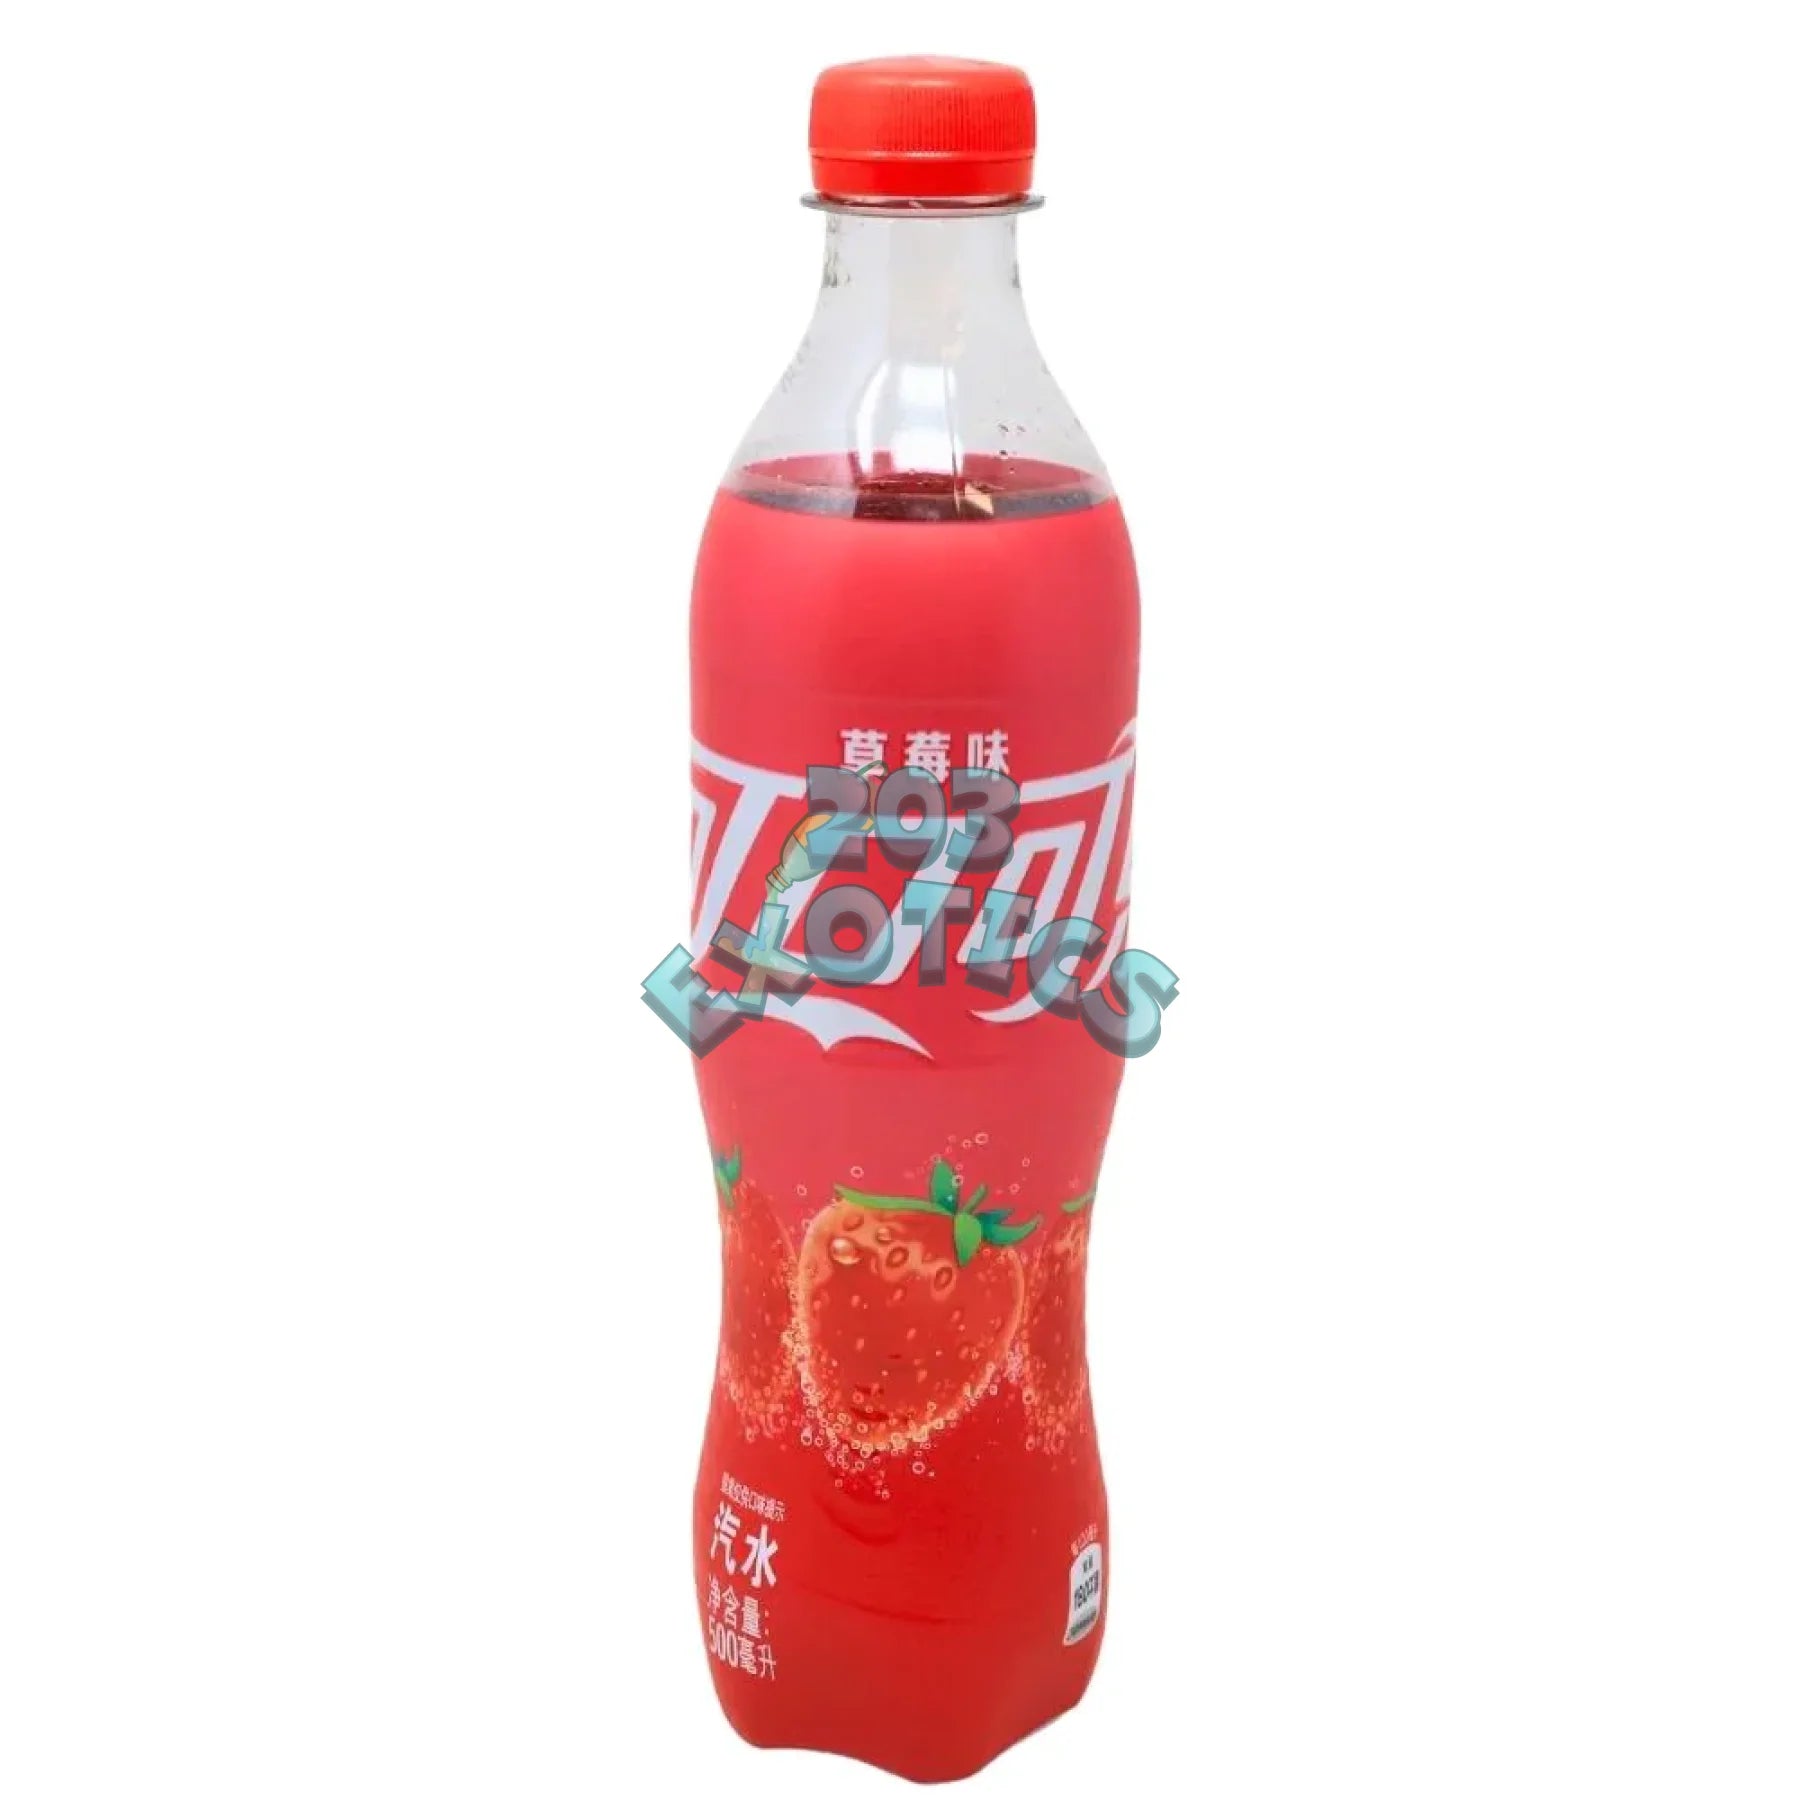 Coca Cola Strawberry (500Ml)